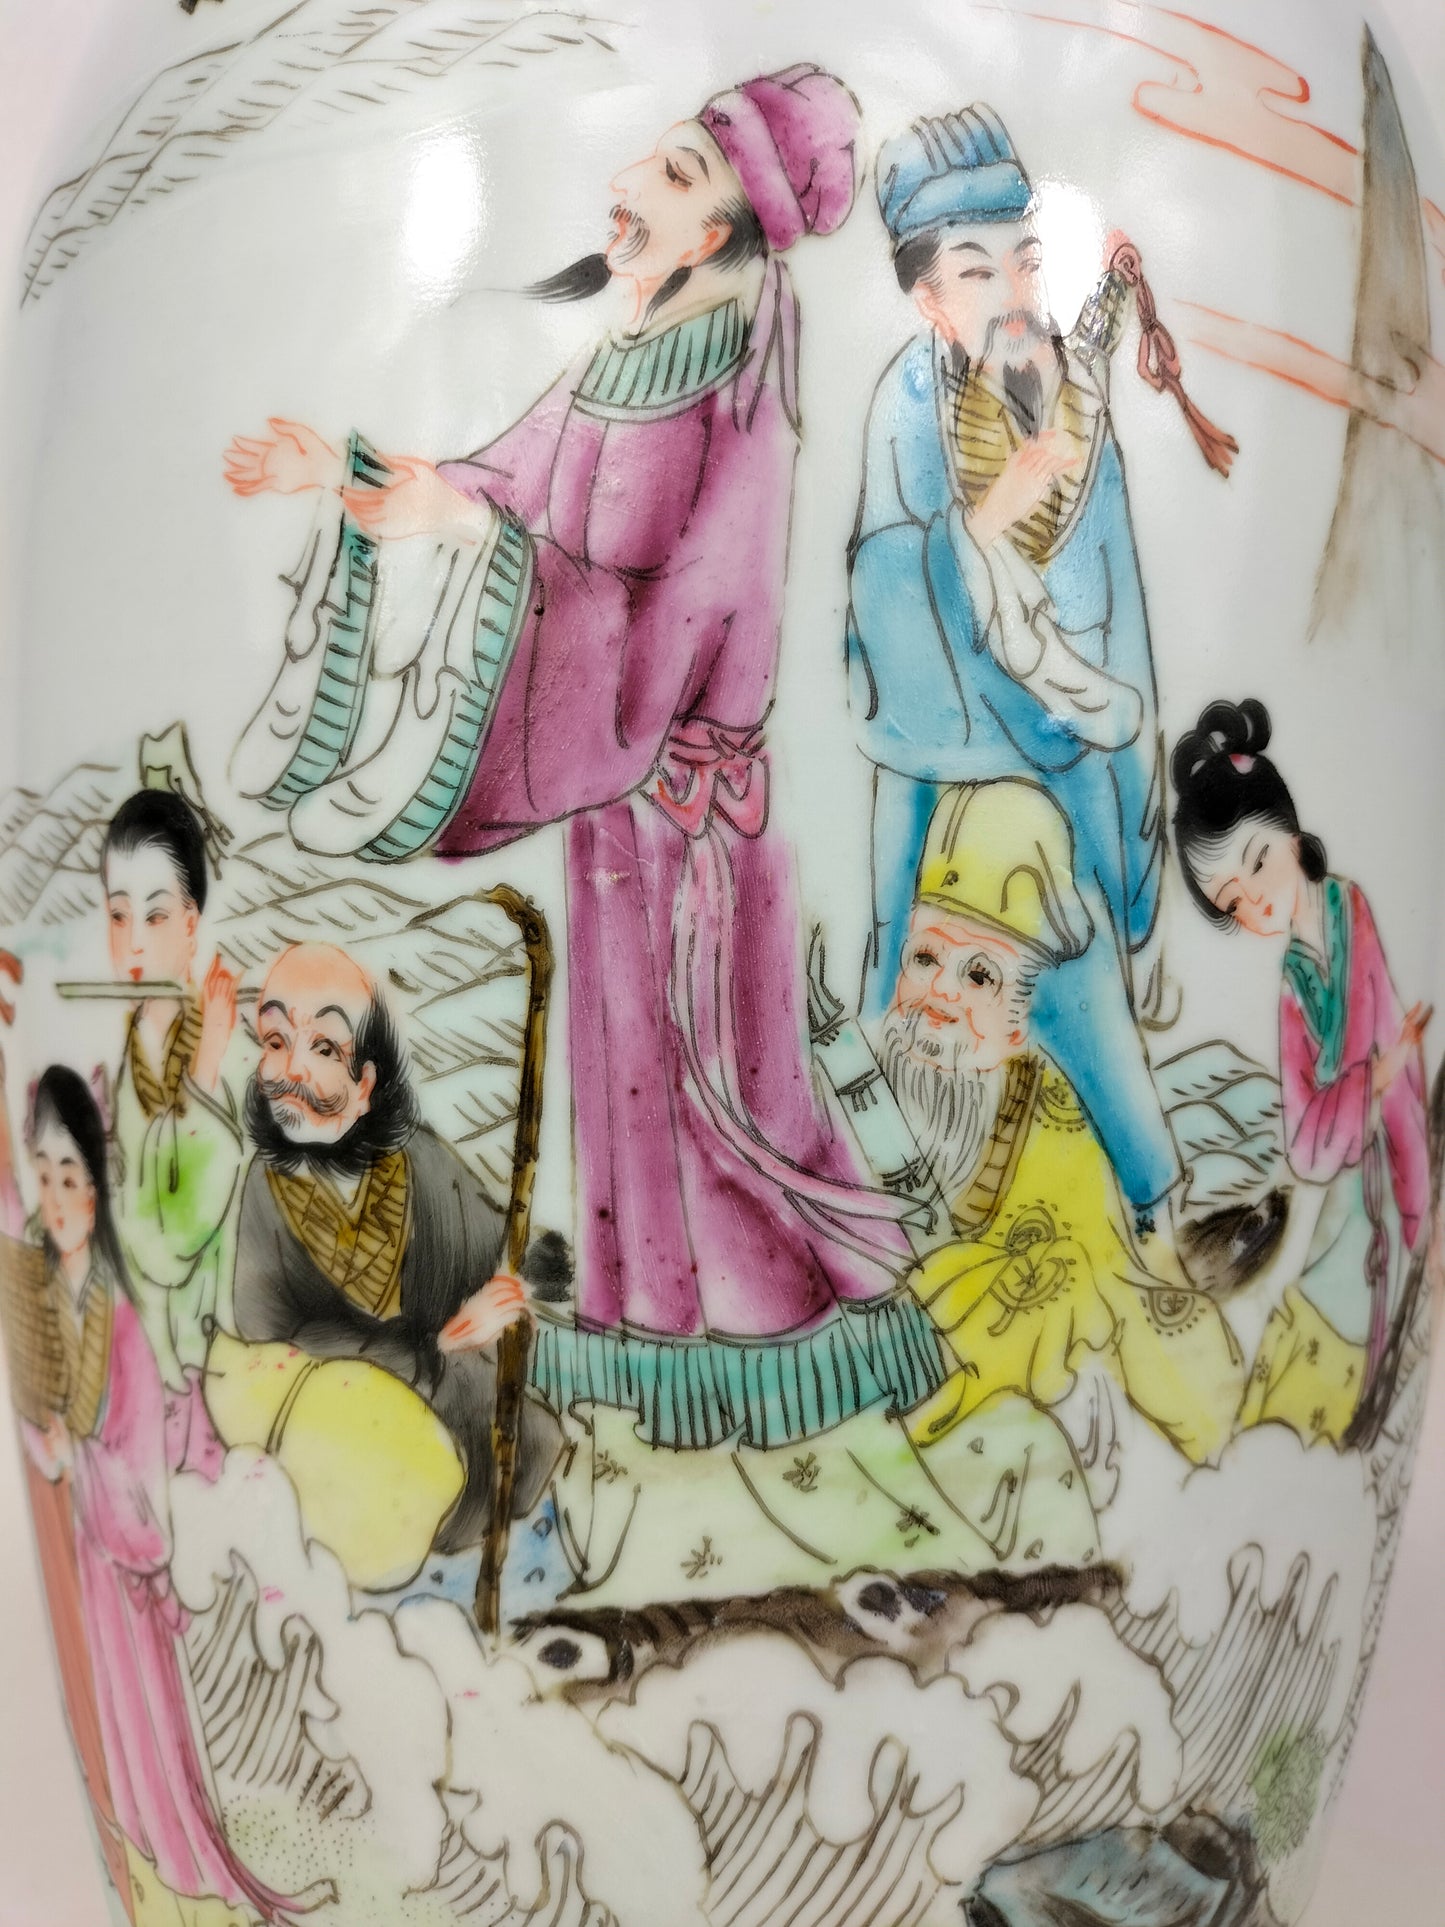 Vaso grande da família rosa chinesa decorado com 8 imortais // marca Qianlong - século XX